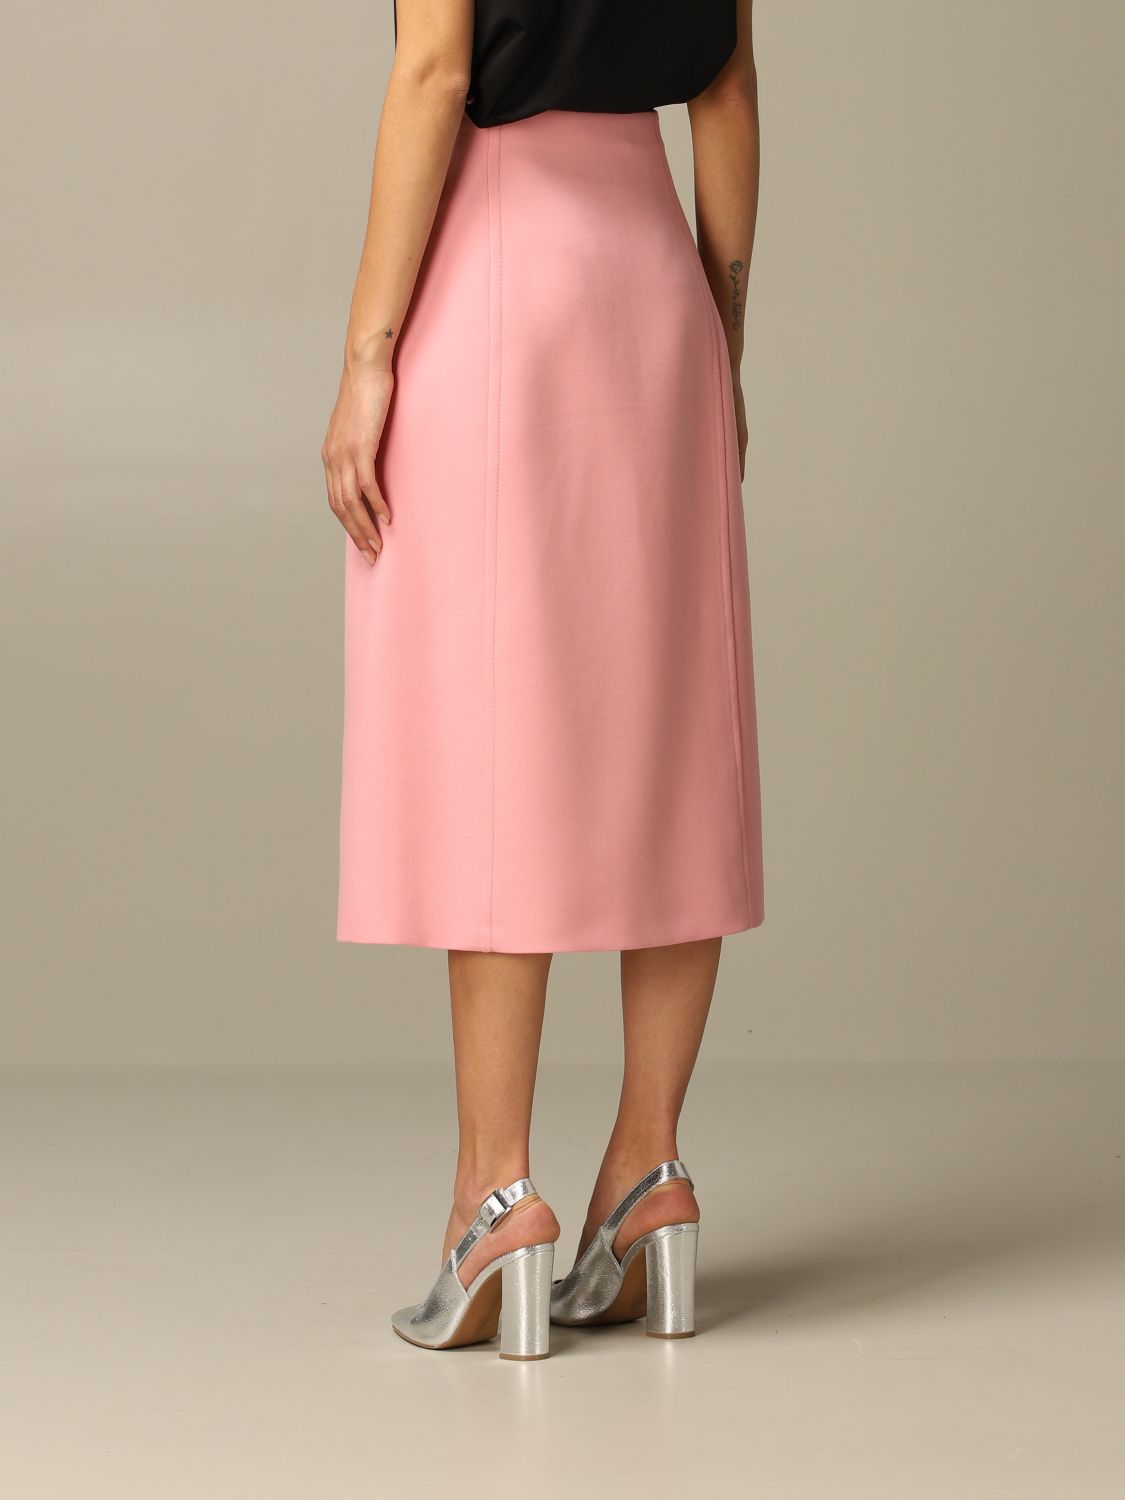 PRADA: virgin wool skirt with jewel buttons | Skirt Prada Women Pink